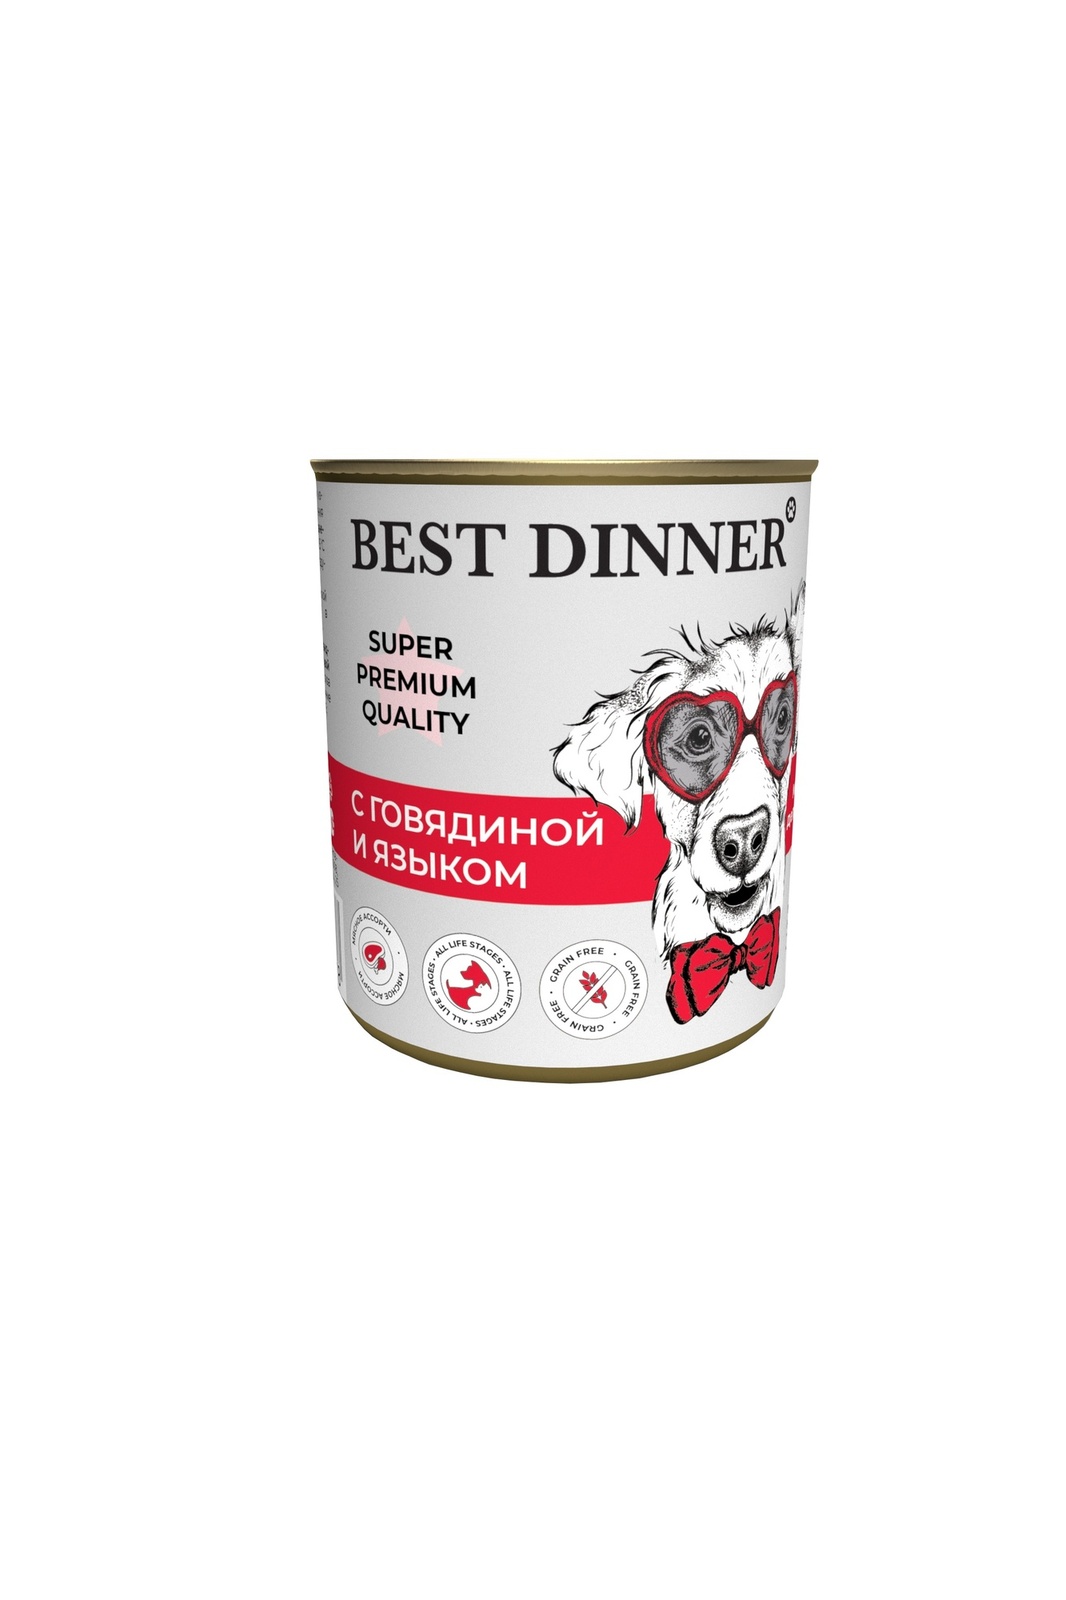 Best Dinner Best Dinner консервы для собак Super Premium С говядиной и языком (340 г) best dinner best dinner гипоаллергенные консервы индейка и кролик для собак всех пород 340 г